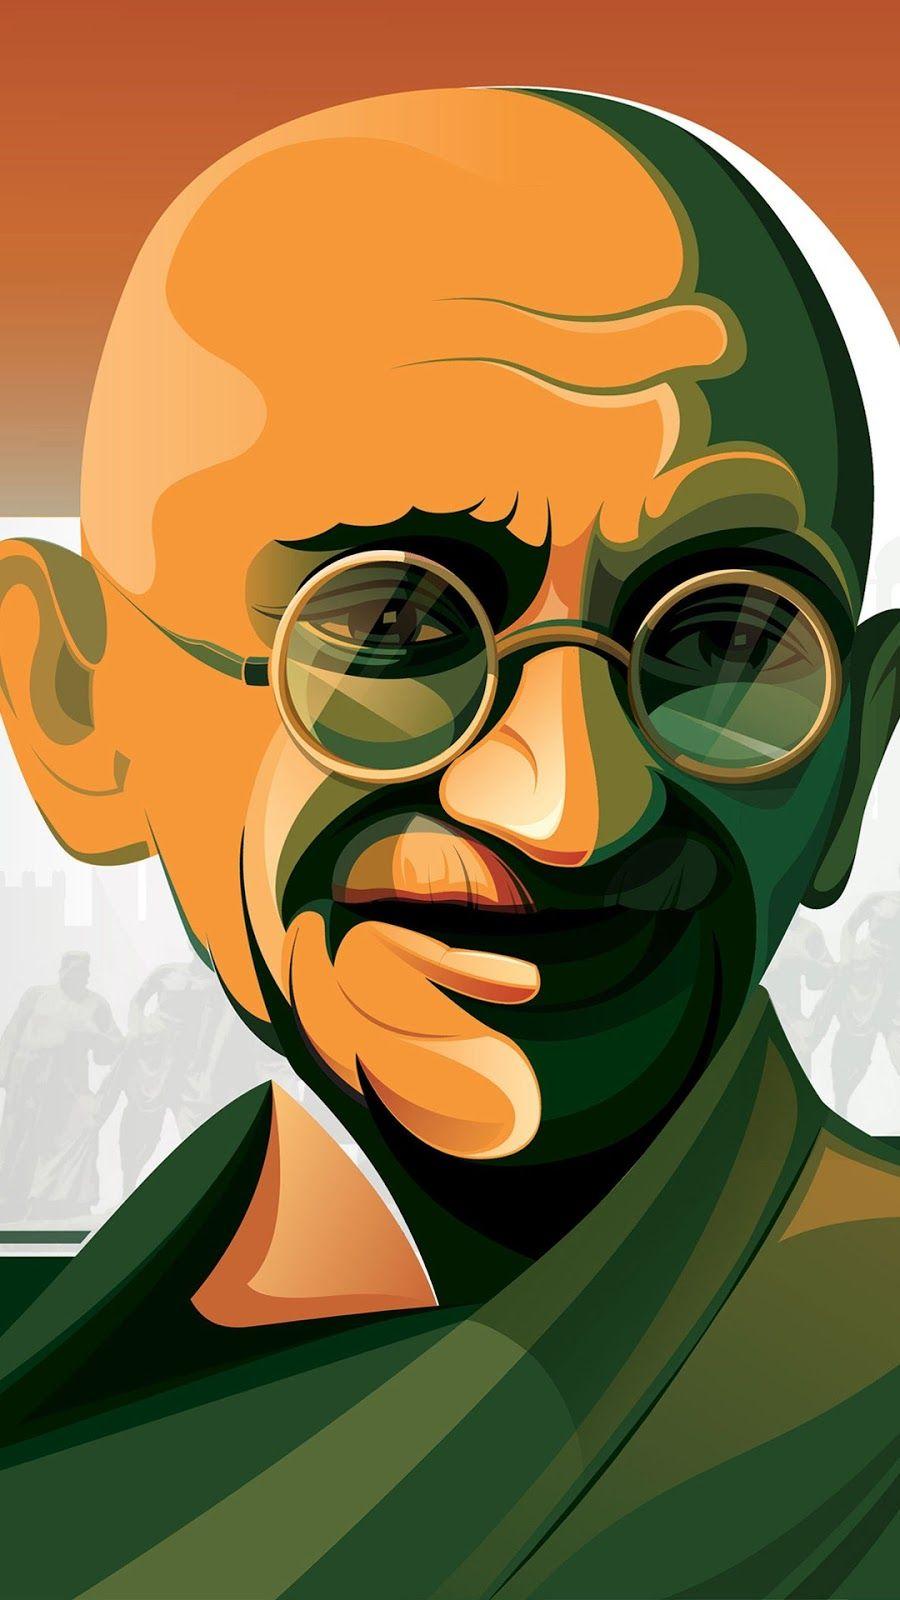 Happy Gandhi Jayanti Wallpaper Free Download